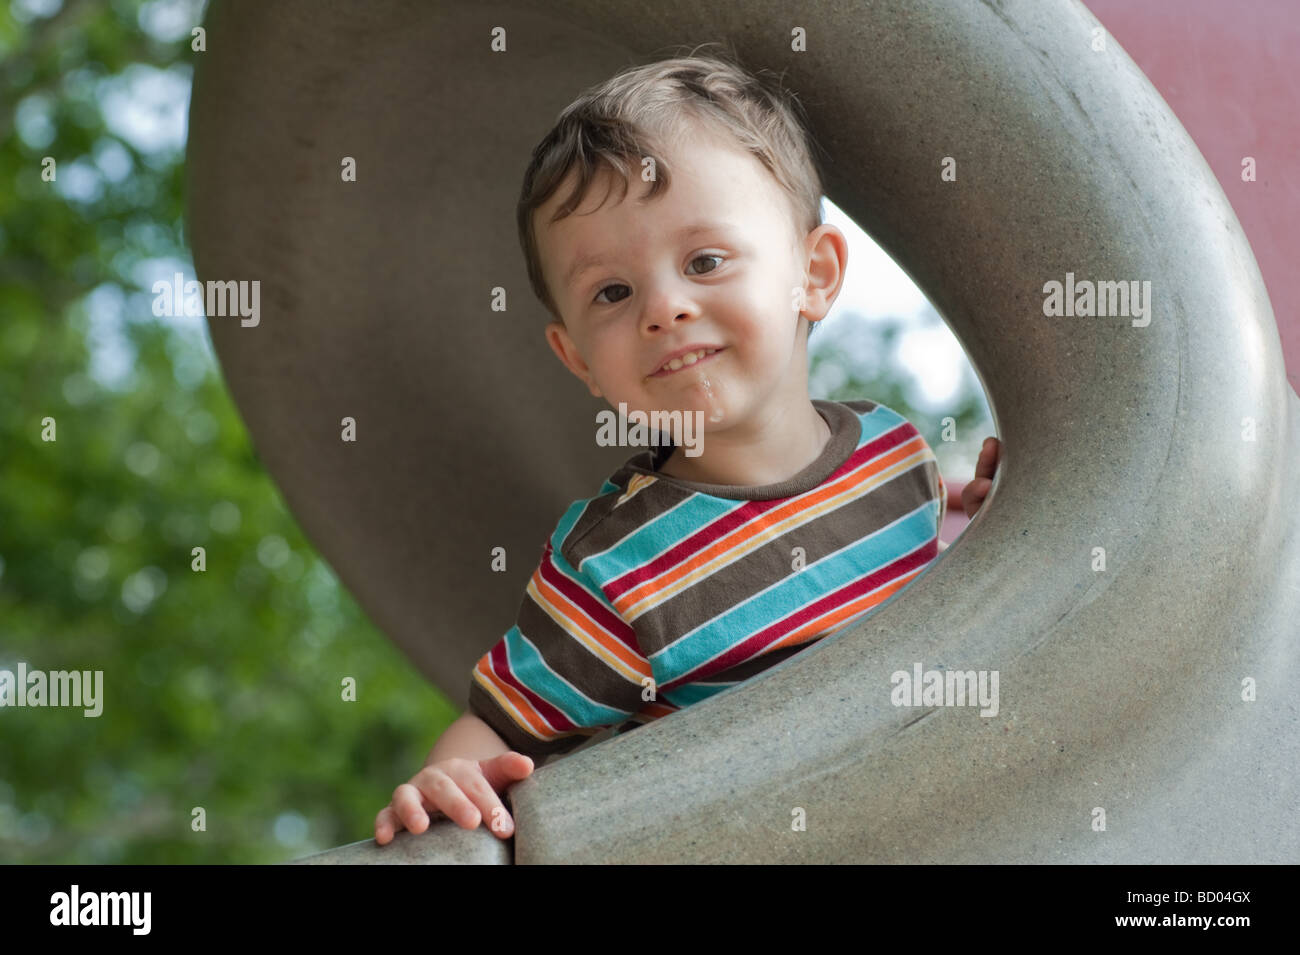 Little Boy giocando su una slitta a parco giochi guardando la fotocamera con un dolce sguardo sul suo viso Foto Stock